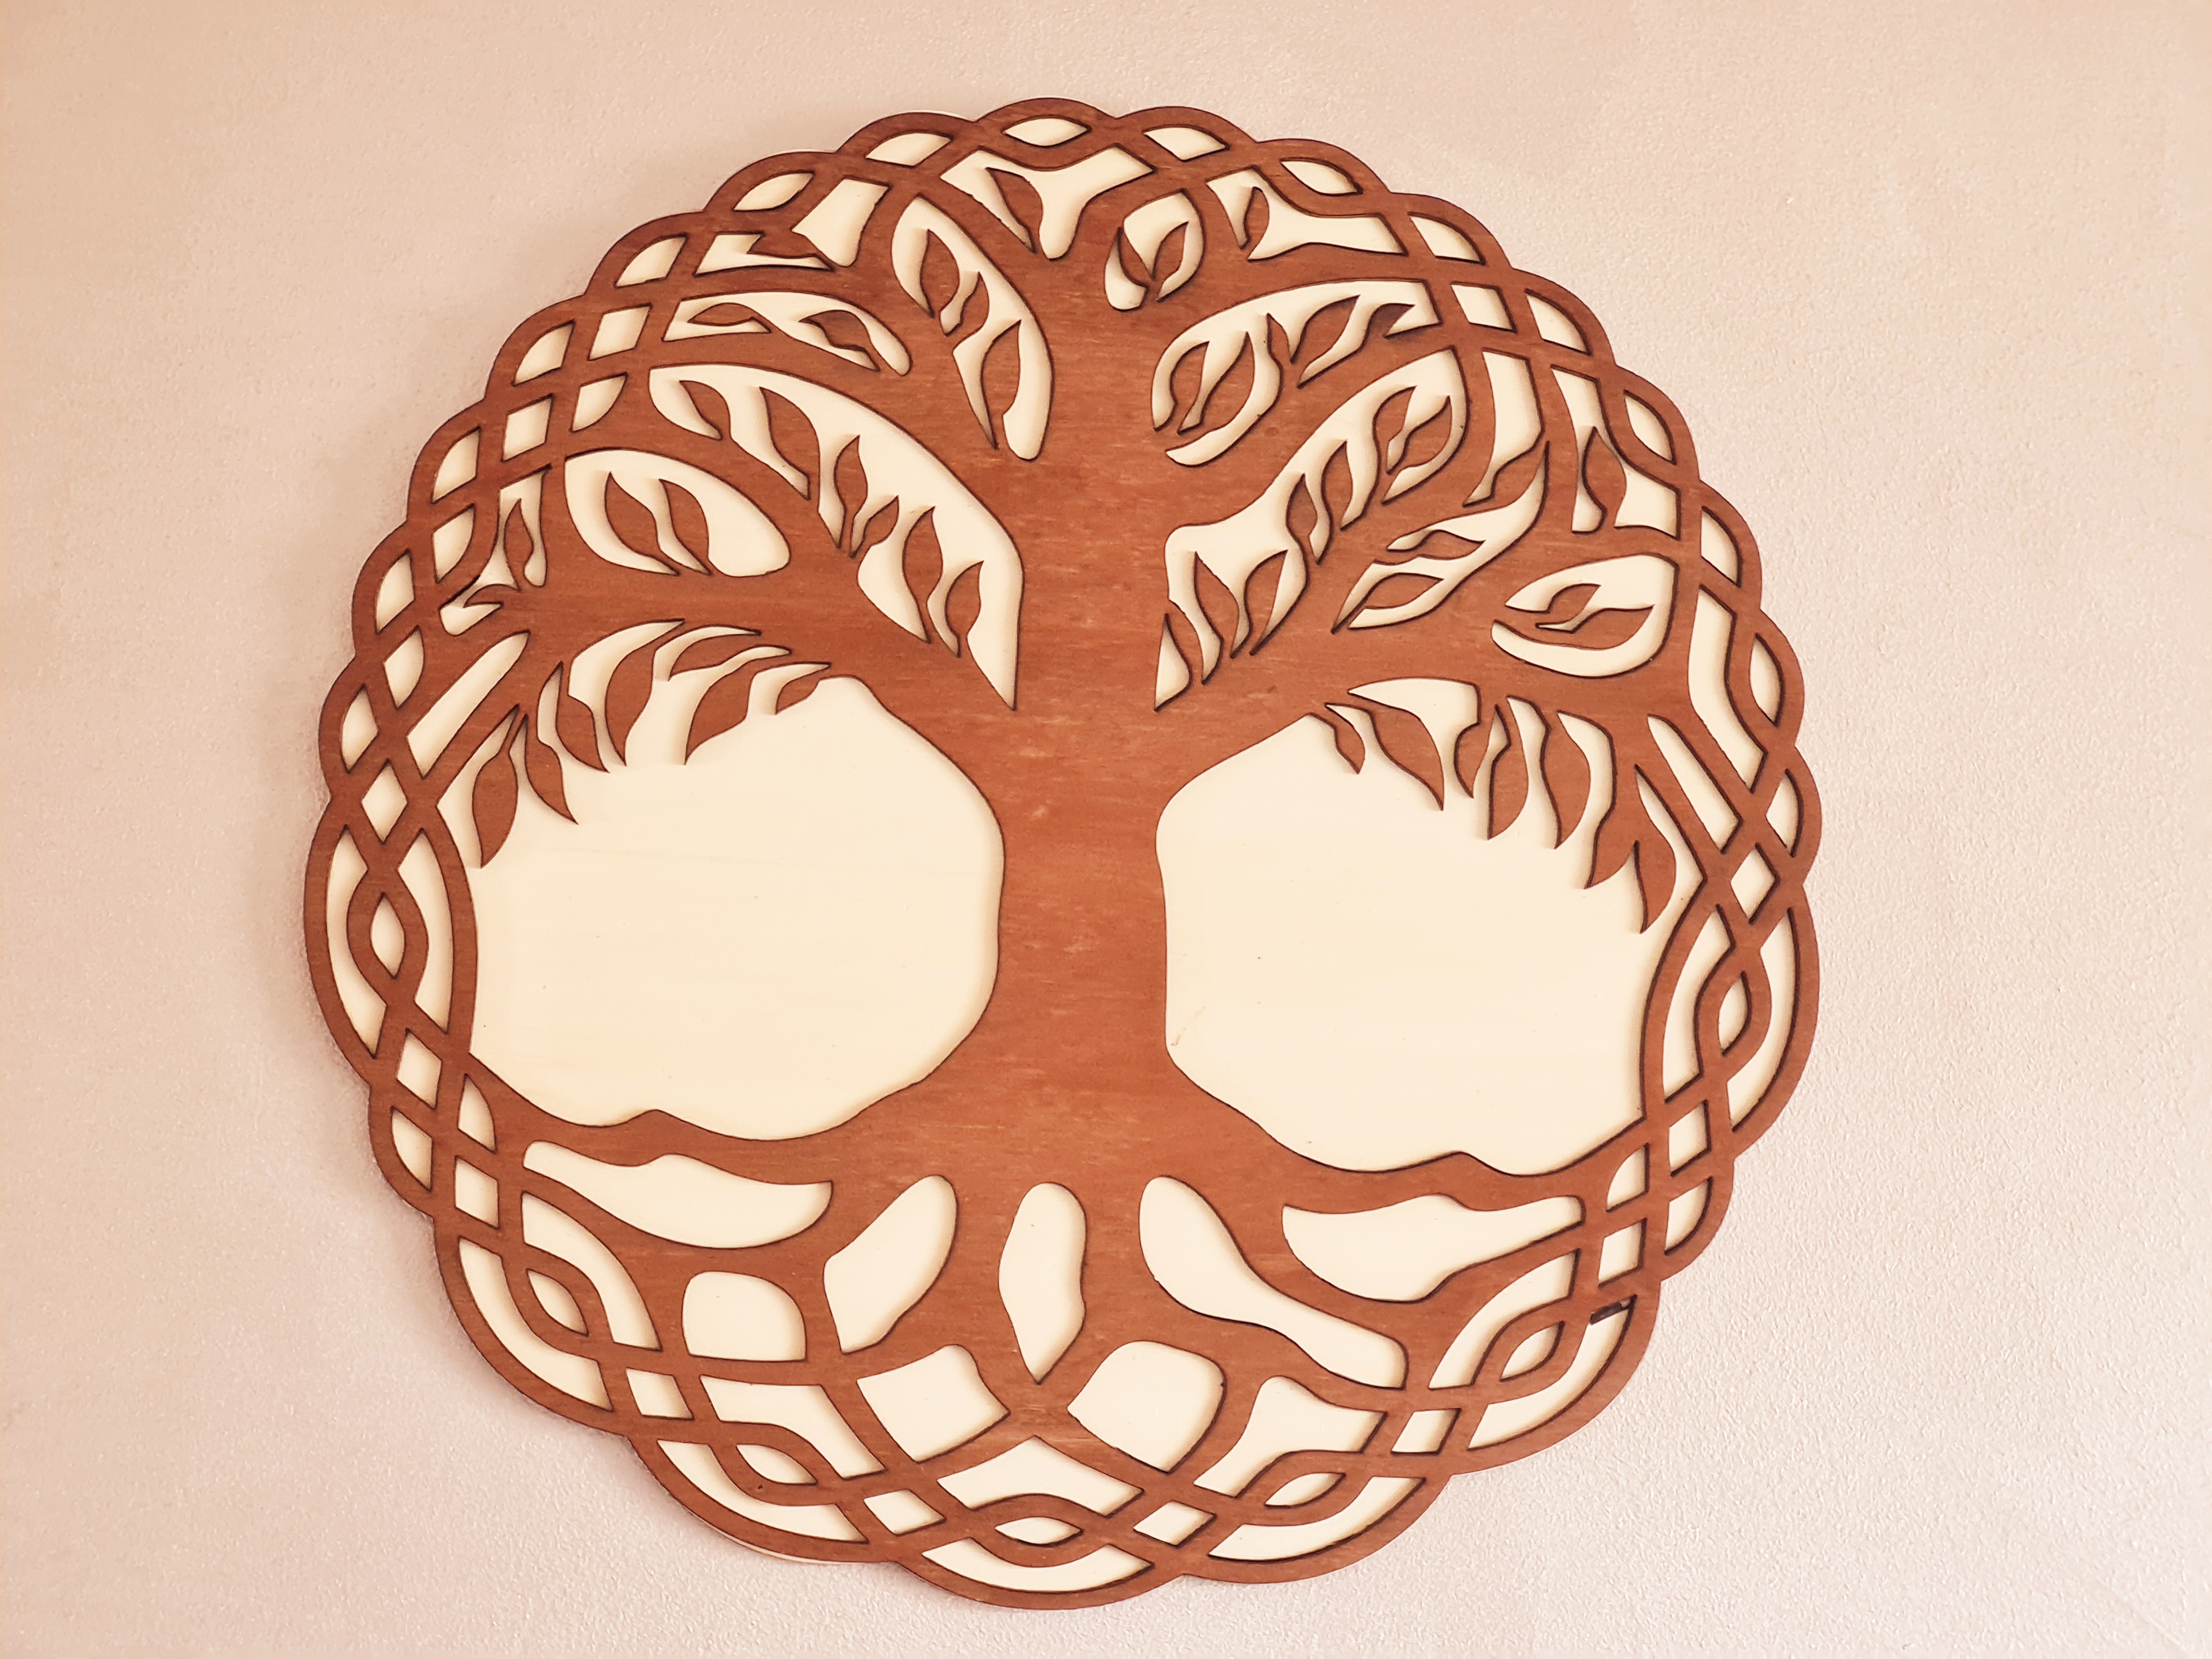 Nos décoration murale arbre de vie décoratifs pour harmoniser les énergies  sur ce motif de géométrie sacrée arbre de vie